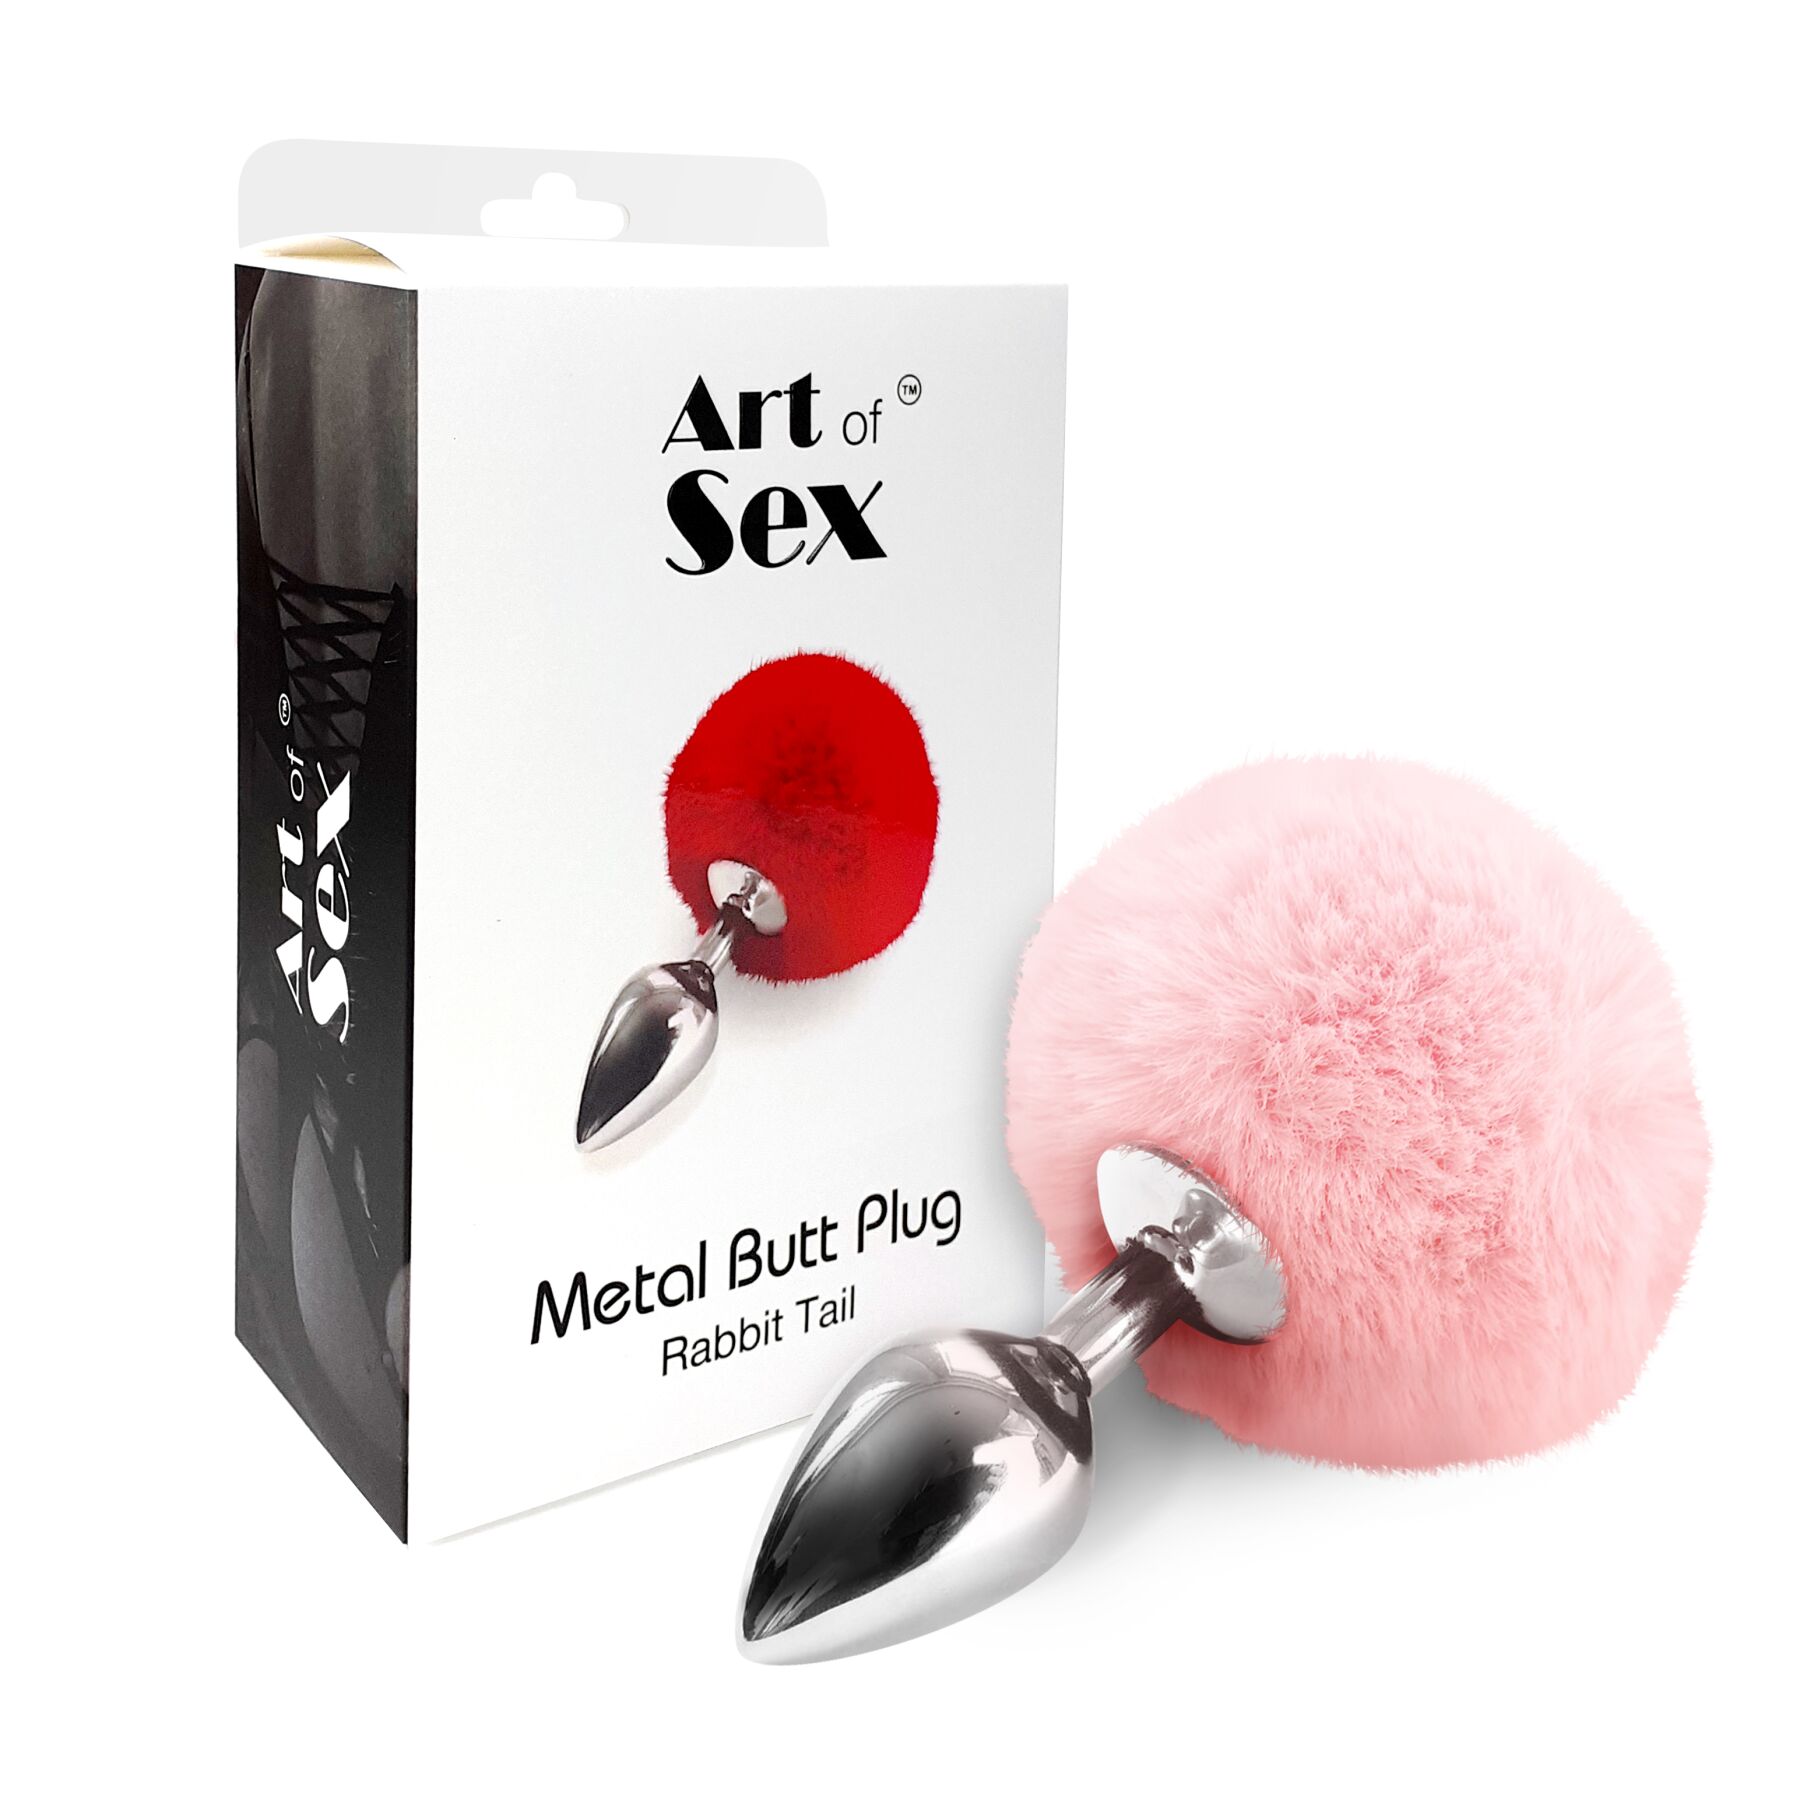     Art of Sex — Metal Butt plug Rabbit Tail, 